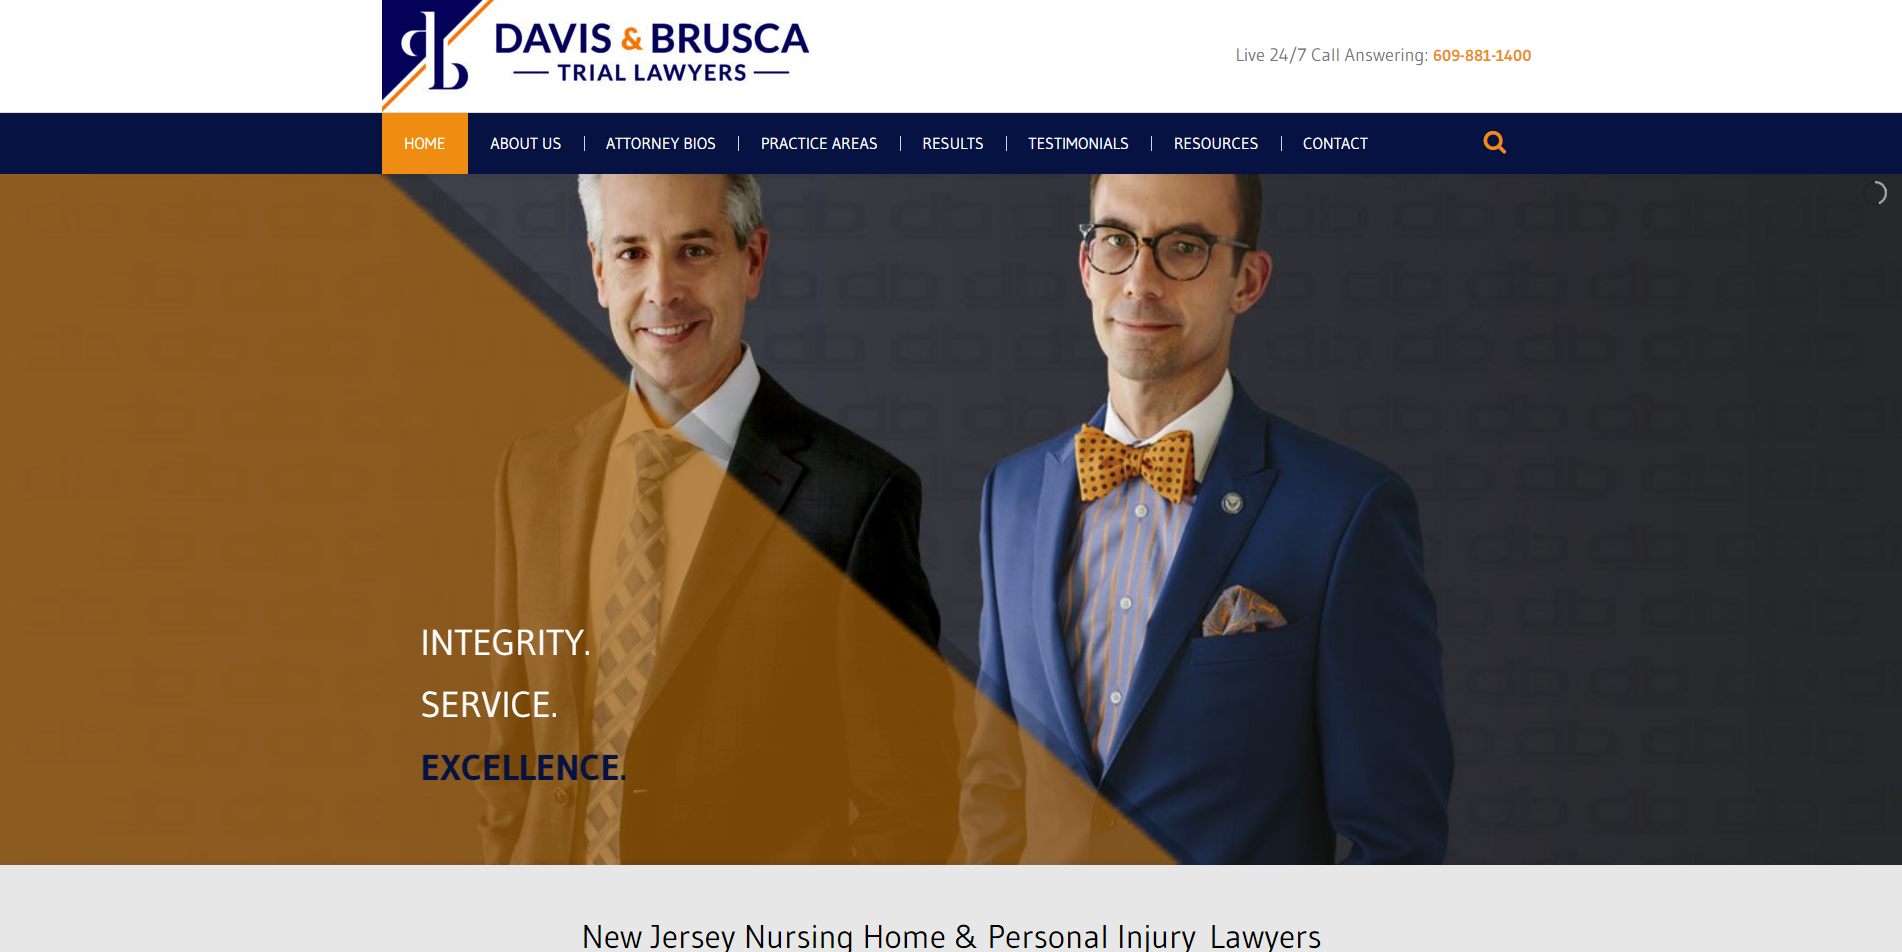 Davis & Brusca